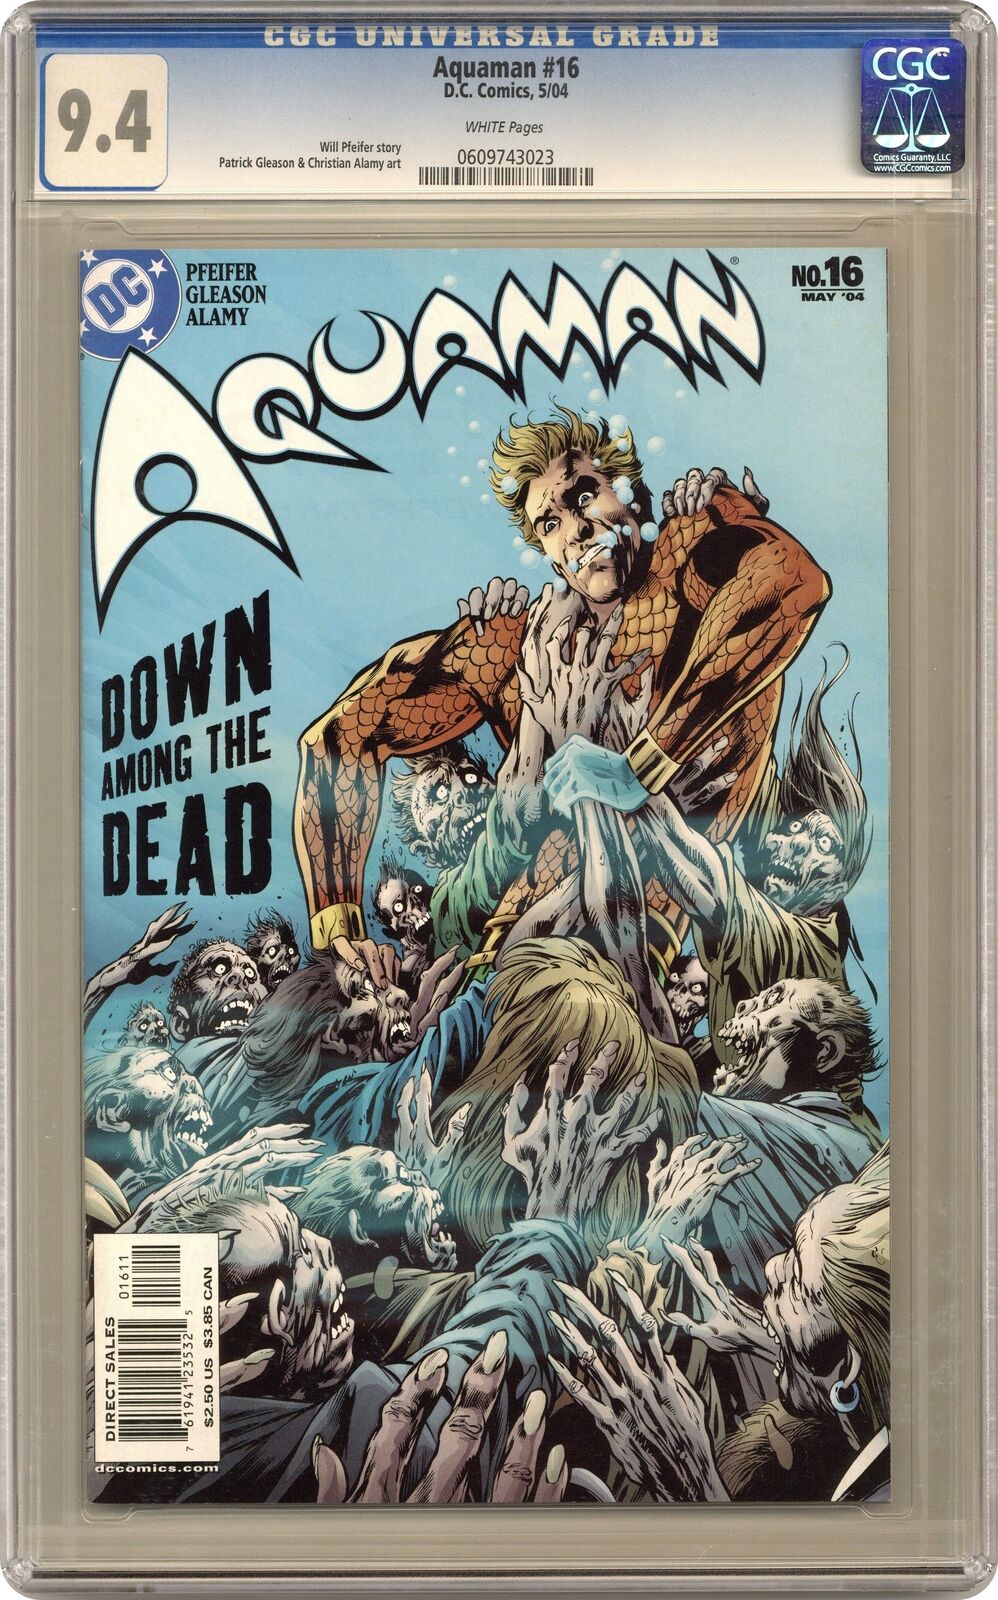 Aquaman #16 CGC 9.4 2004 0609743023